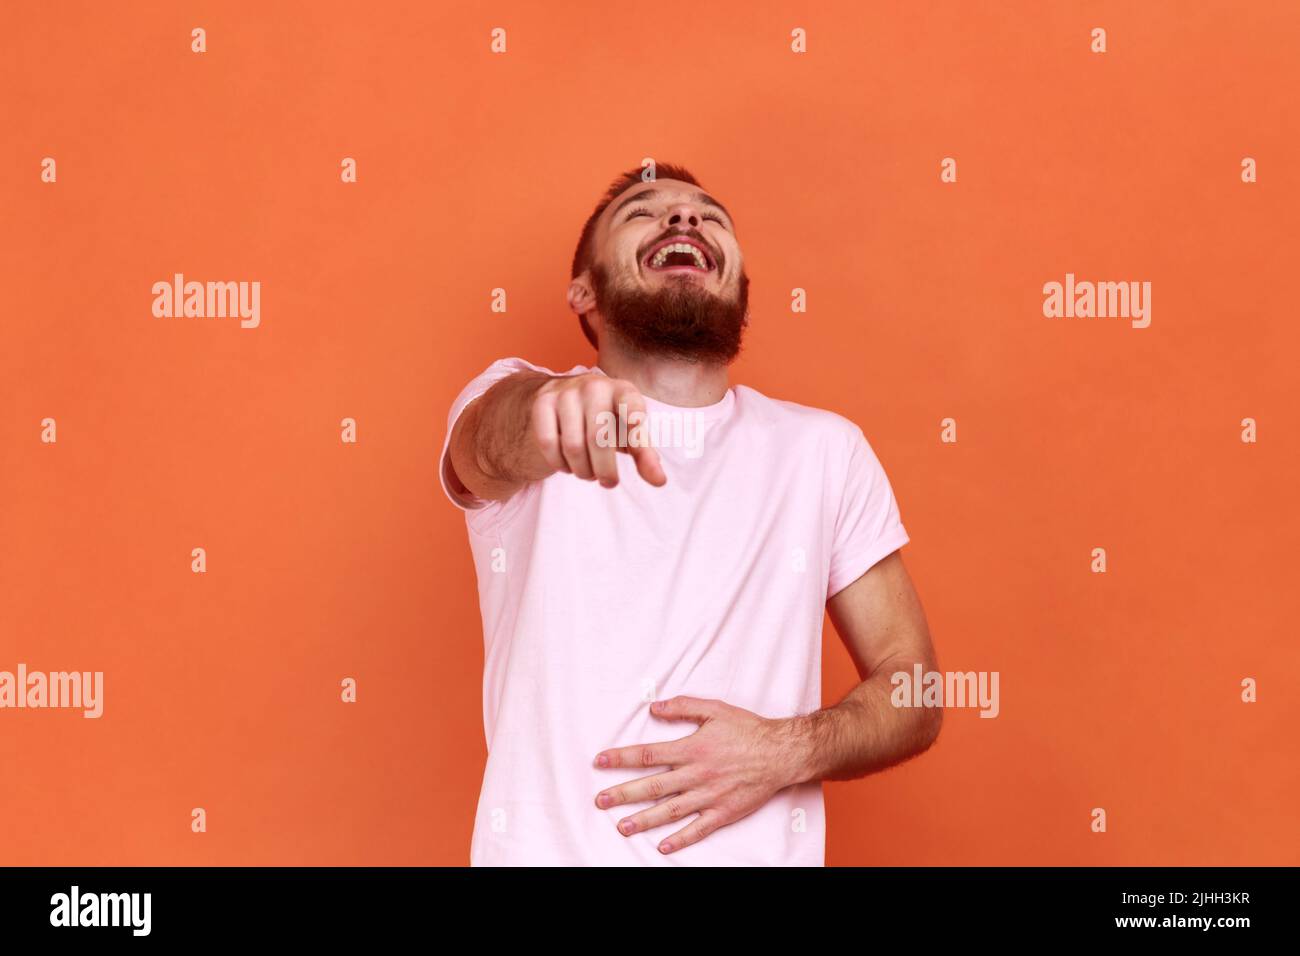 Retrato de hombre barbudo positivo gracioso riendo fuerte sosteniendo el vientre y señalando con el dedo en usted, burla, usando camiseta rosa. Estudio de interior grabado aislado sobre fondo naranja. Foto de stock